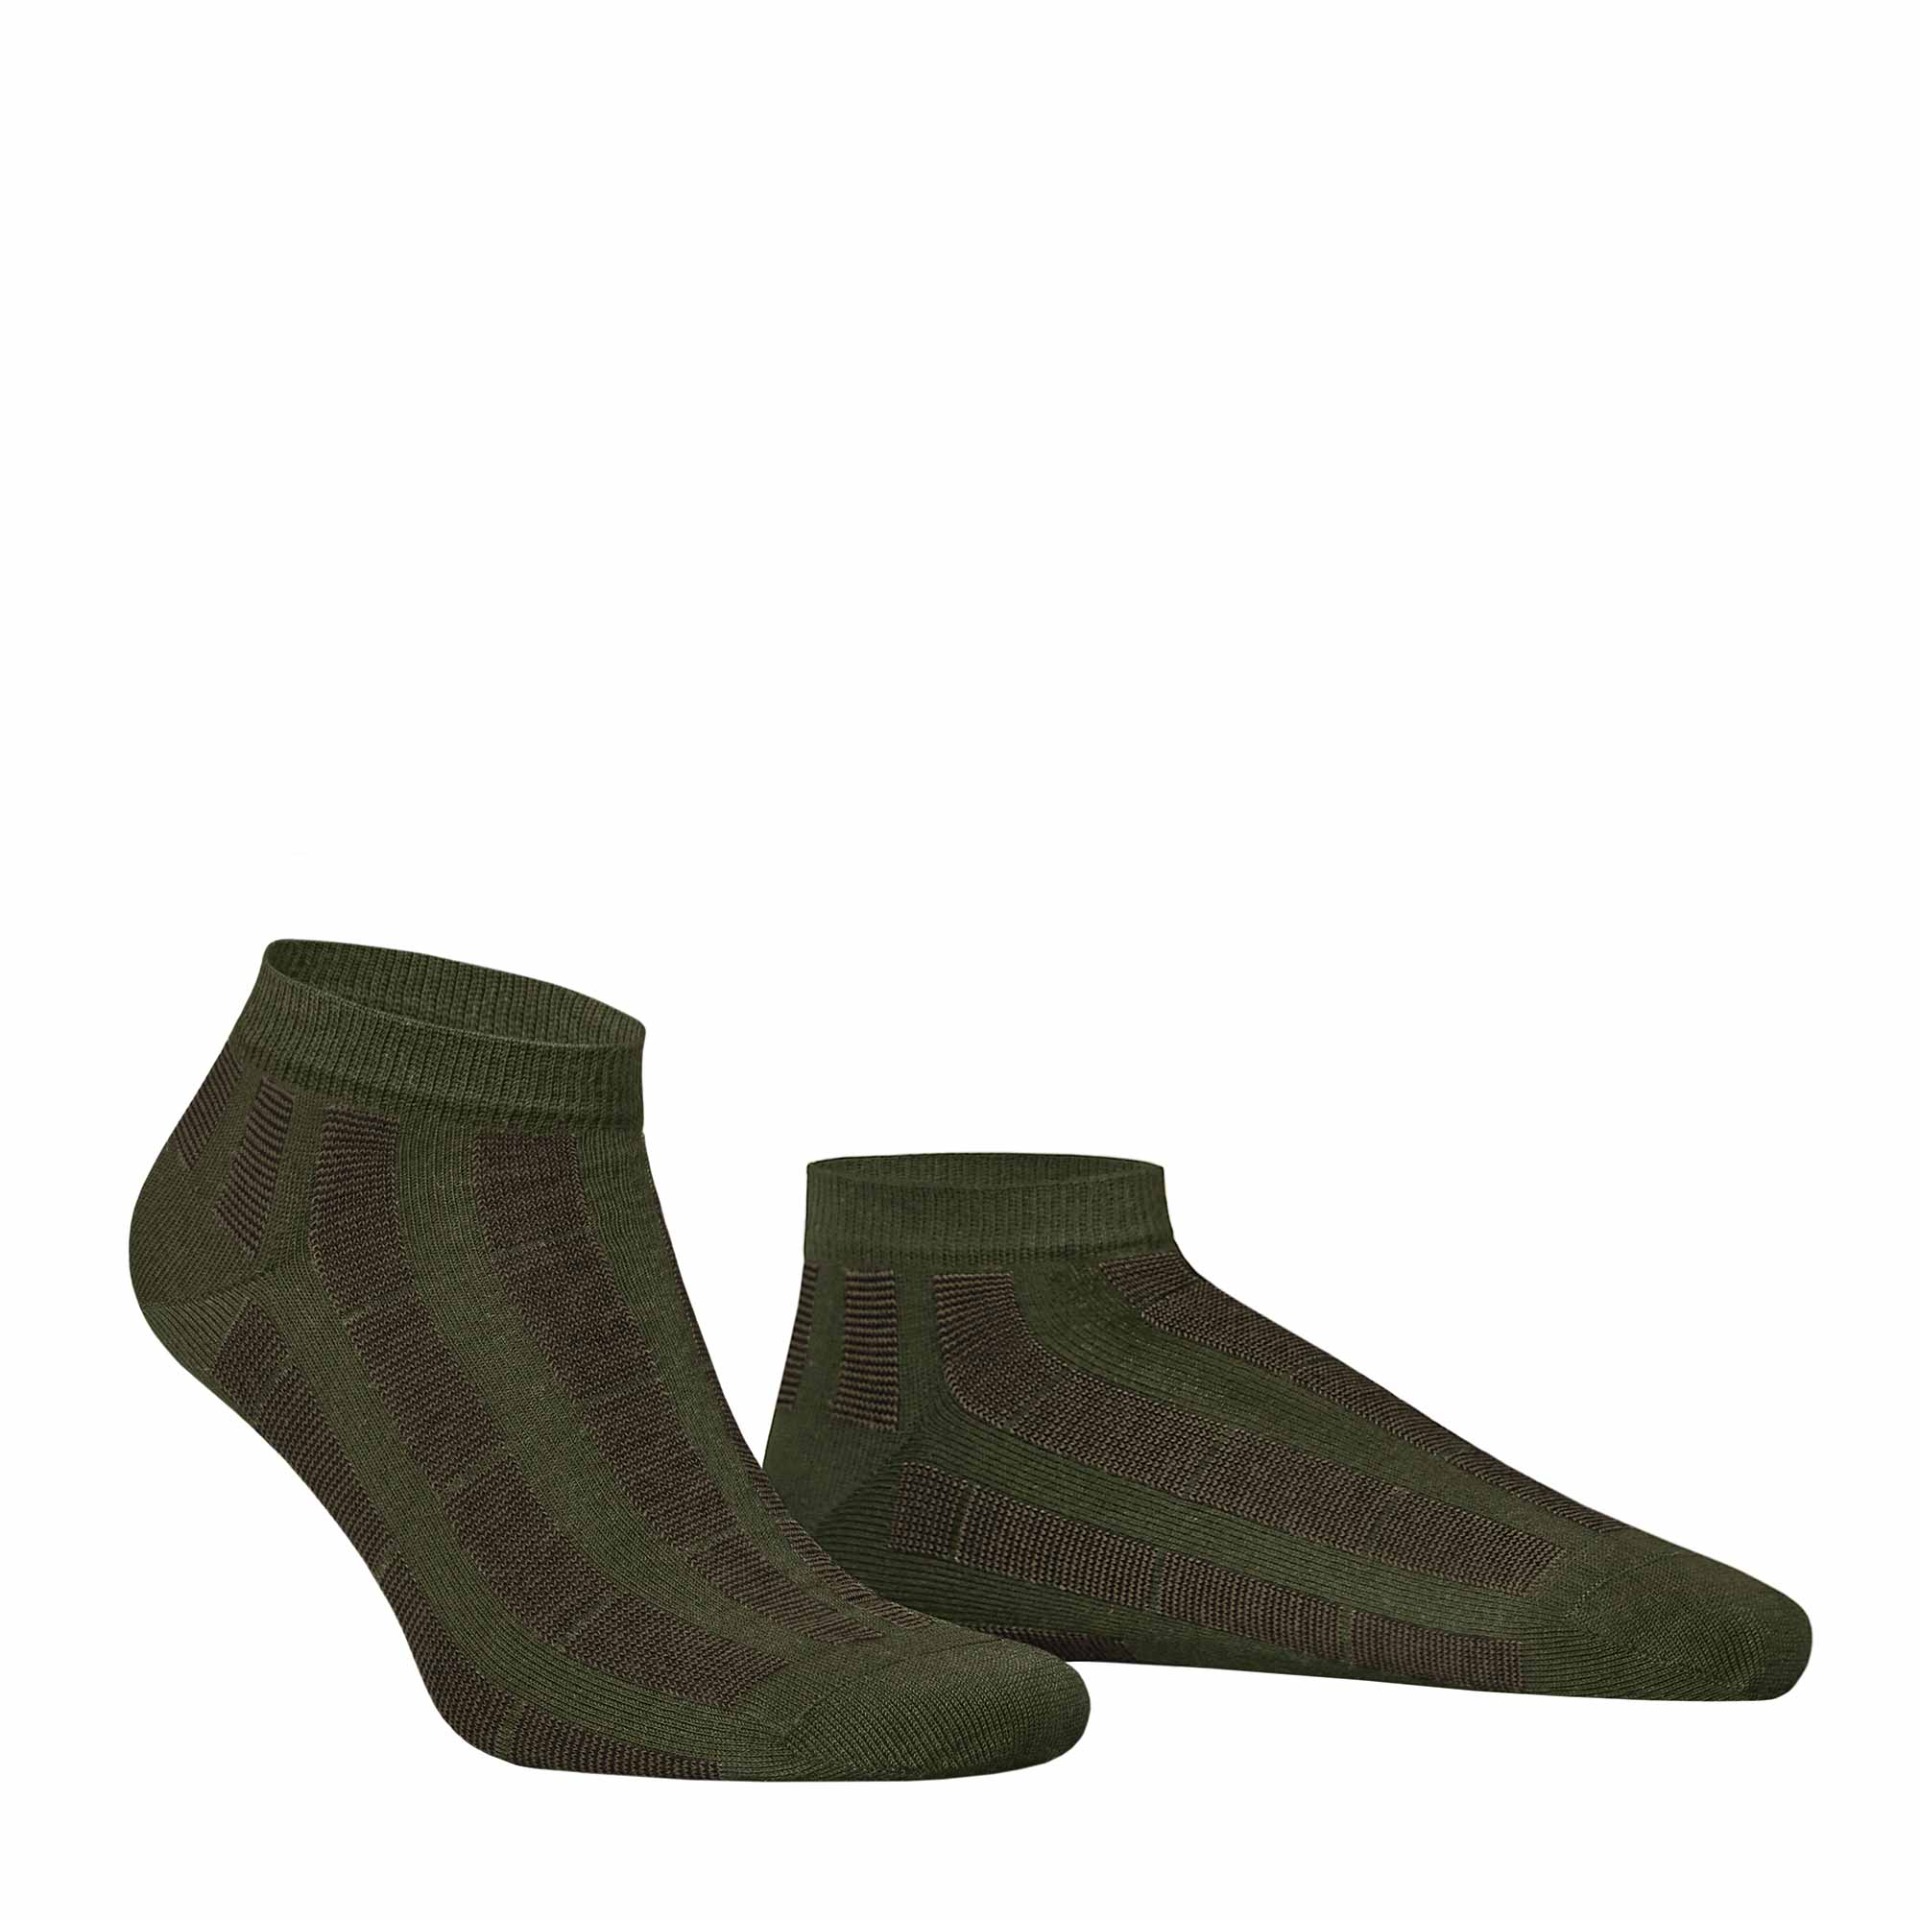 HUDSON Herren PIN -  39/42 - Sneaker Socken mit Streifen-Muster - Army green 0112 (Grün)